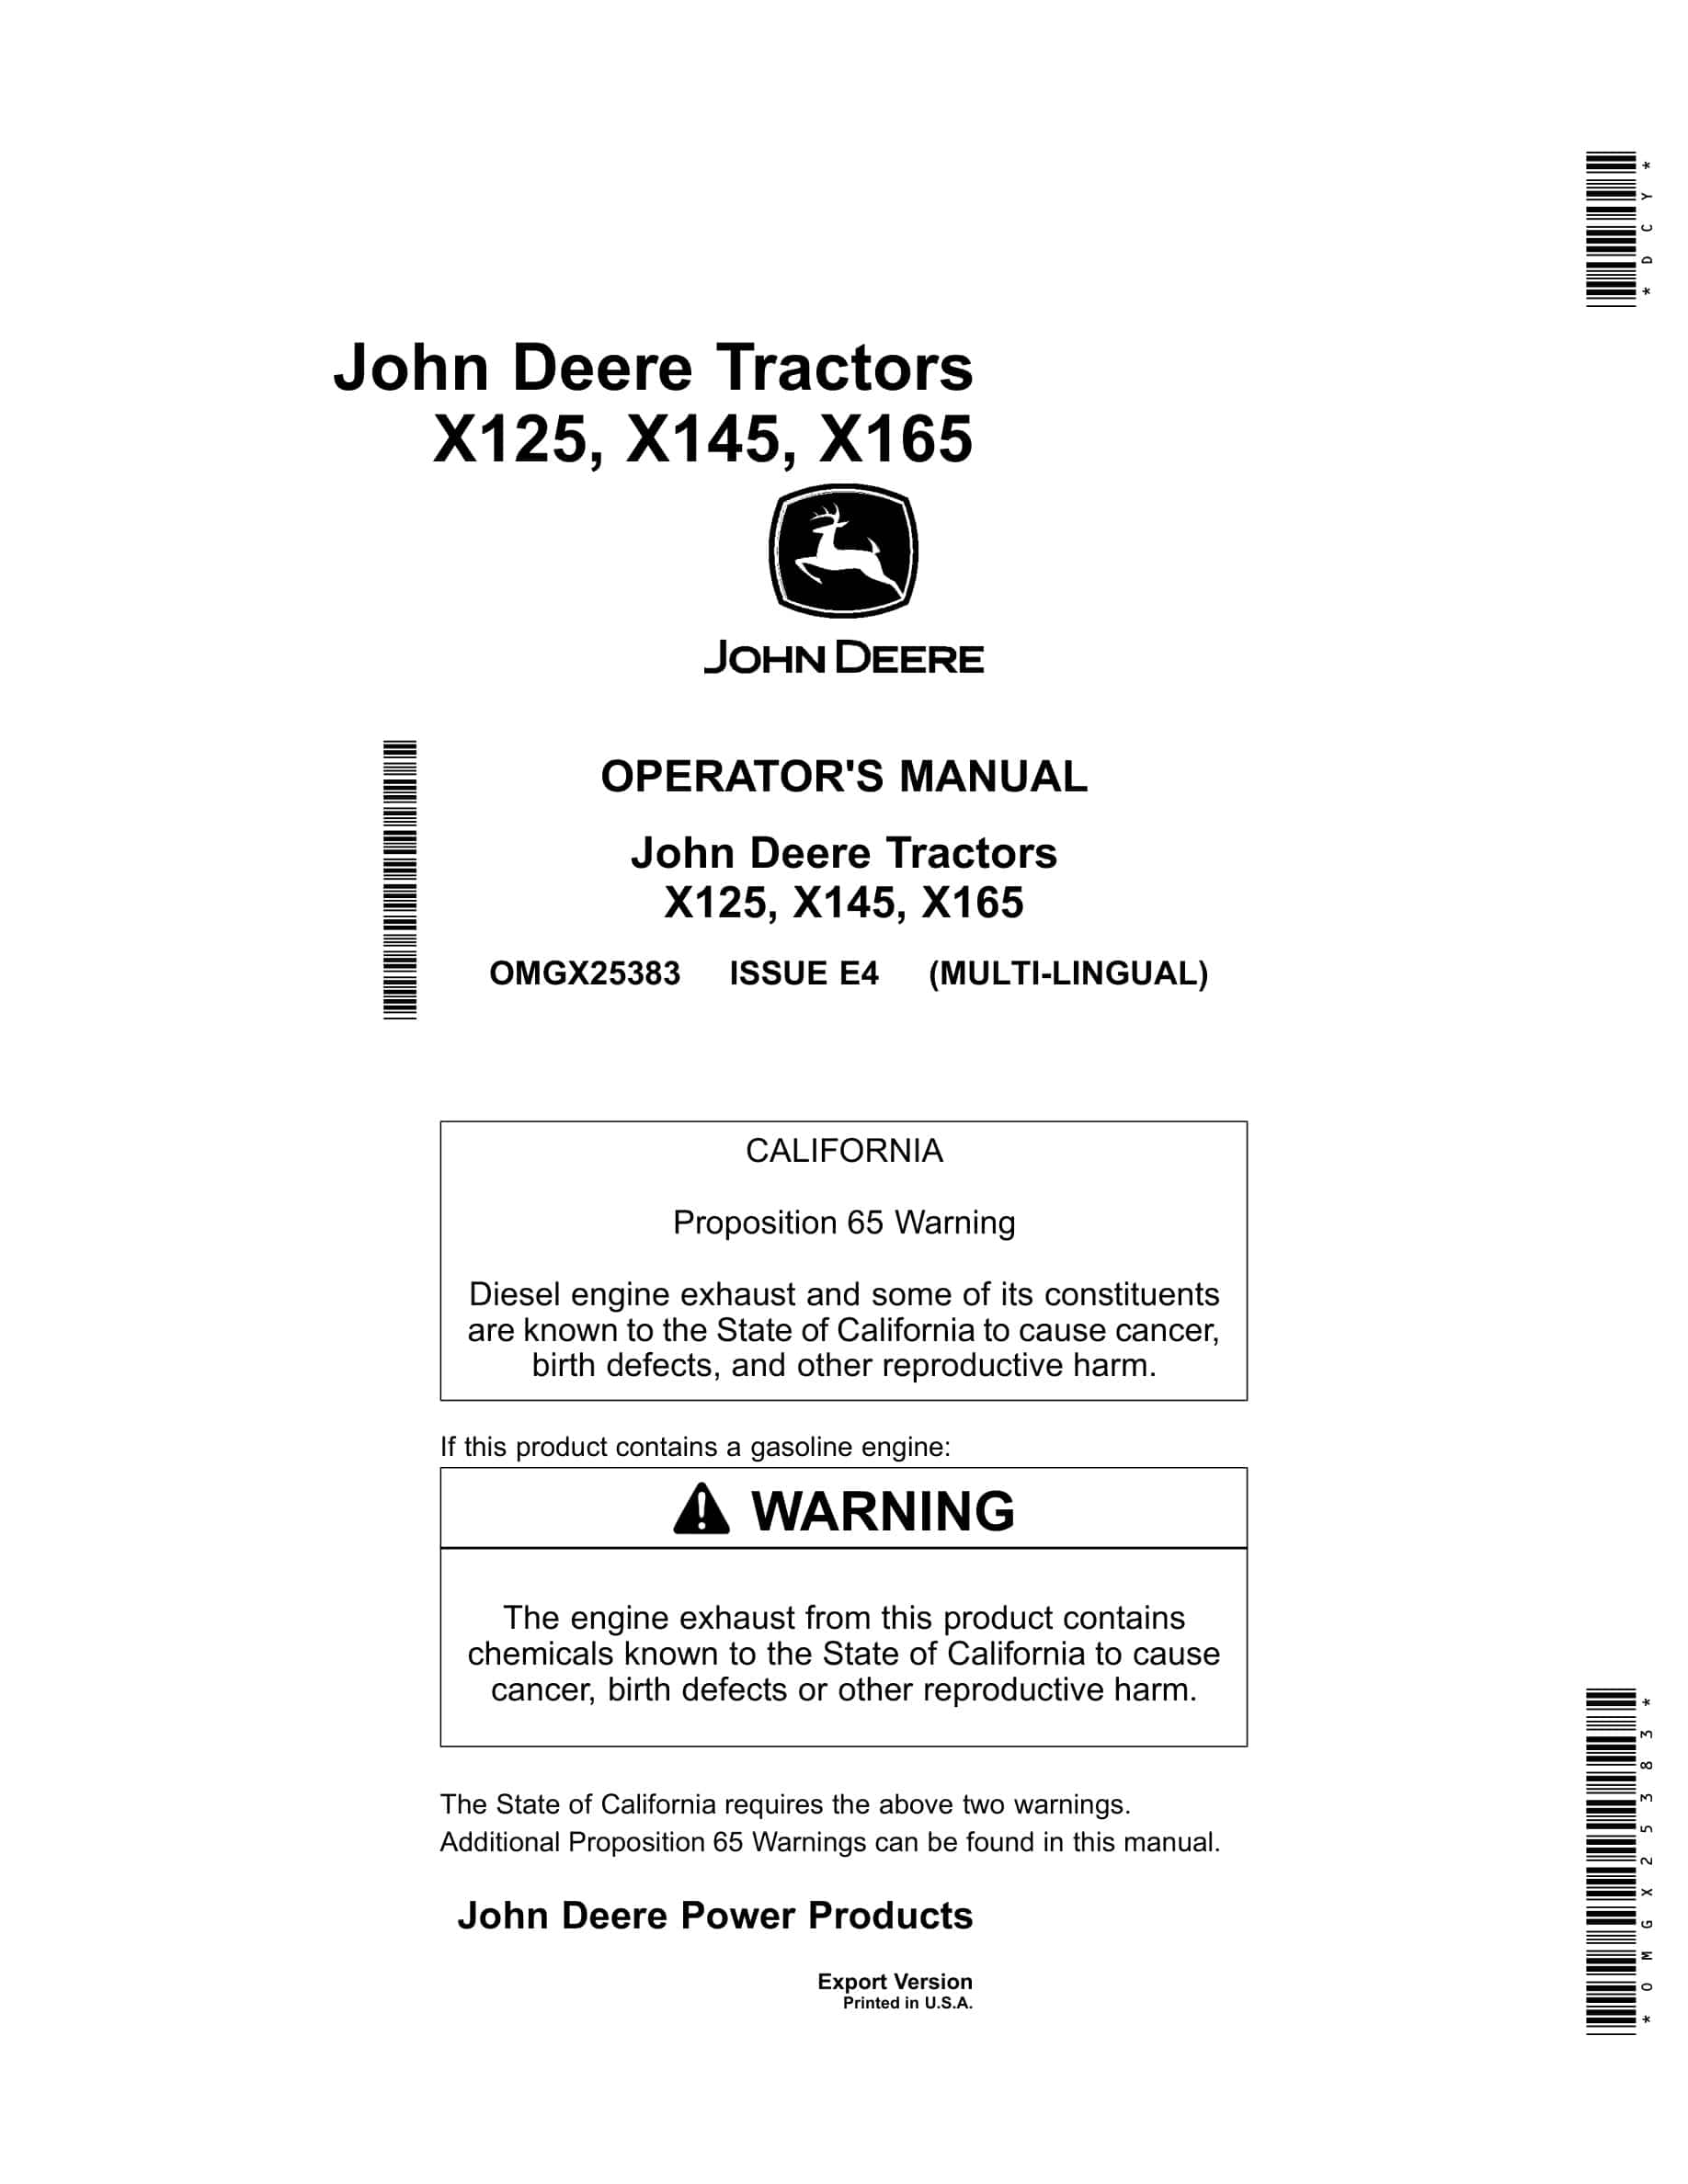 John Deere X125, X145, X165 Tractors Operator Manuals OMGX25383-1